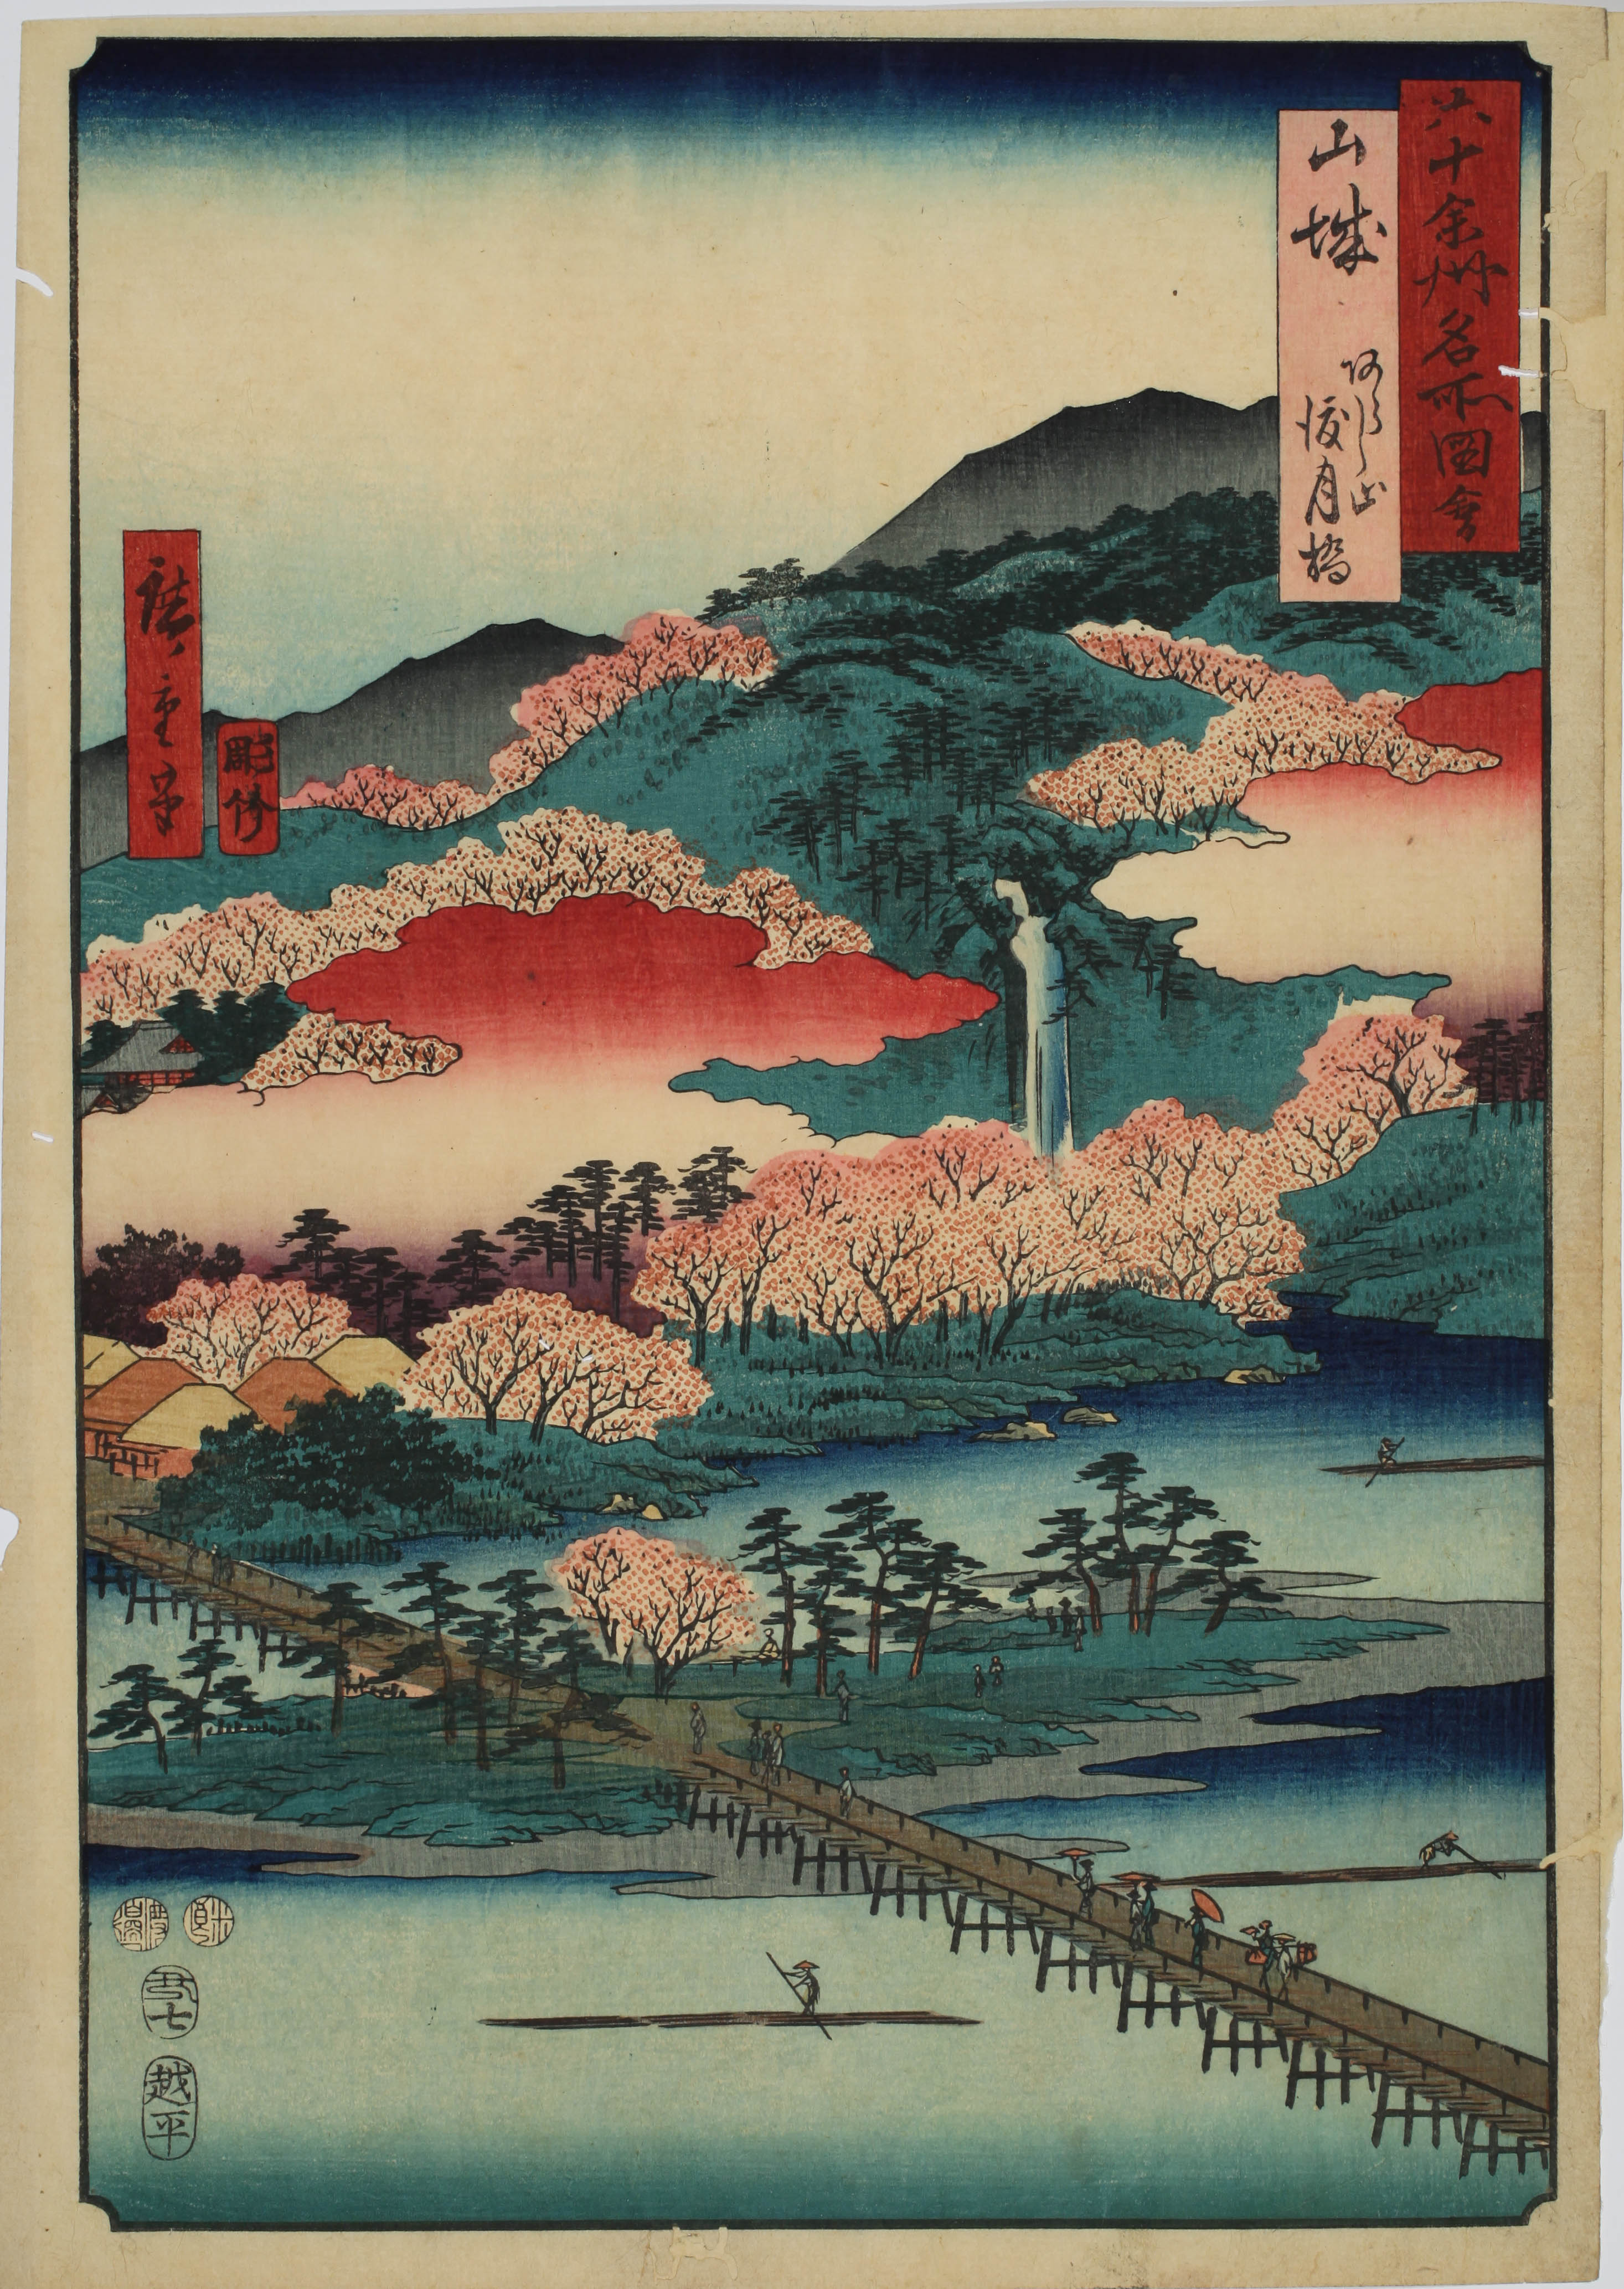 別無工夫」日記 by toshi fujiwara: 浮世絵版画の最盛期から考える 